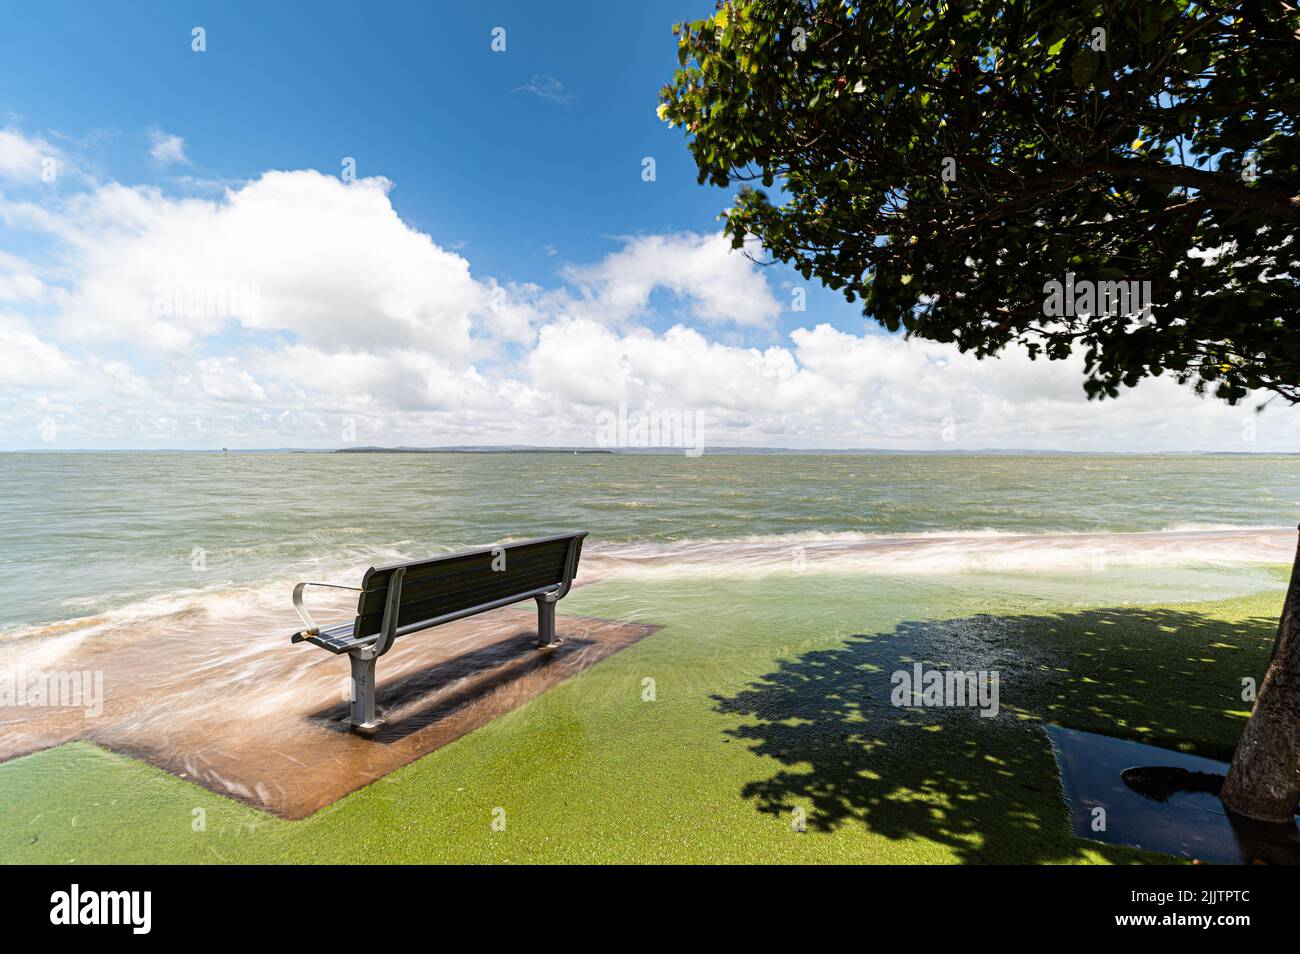 Eine Bank an einem Ufer bei extra hohen Gezeiten - Klimawandel Stockfoto